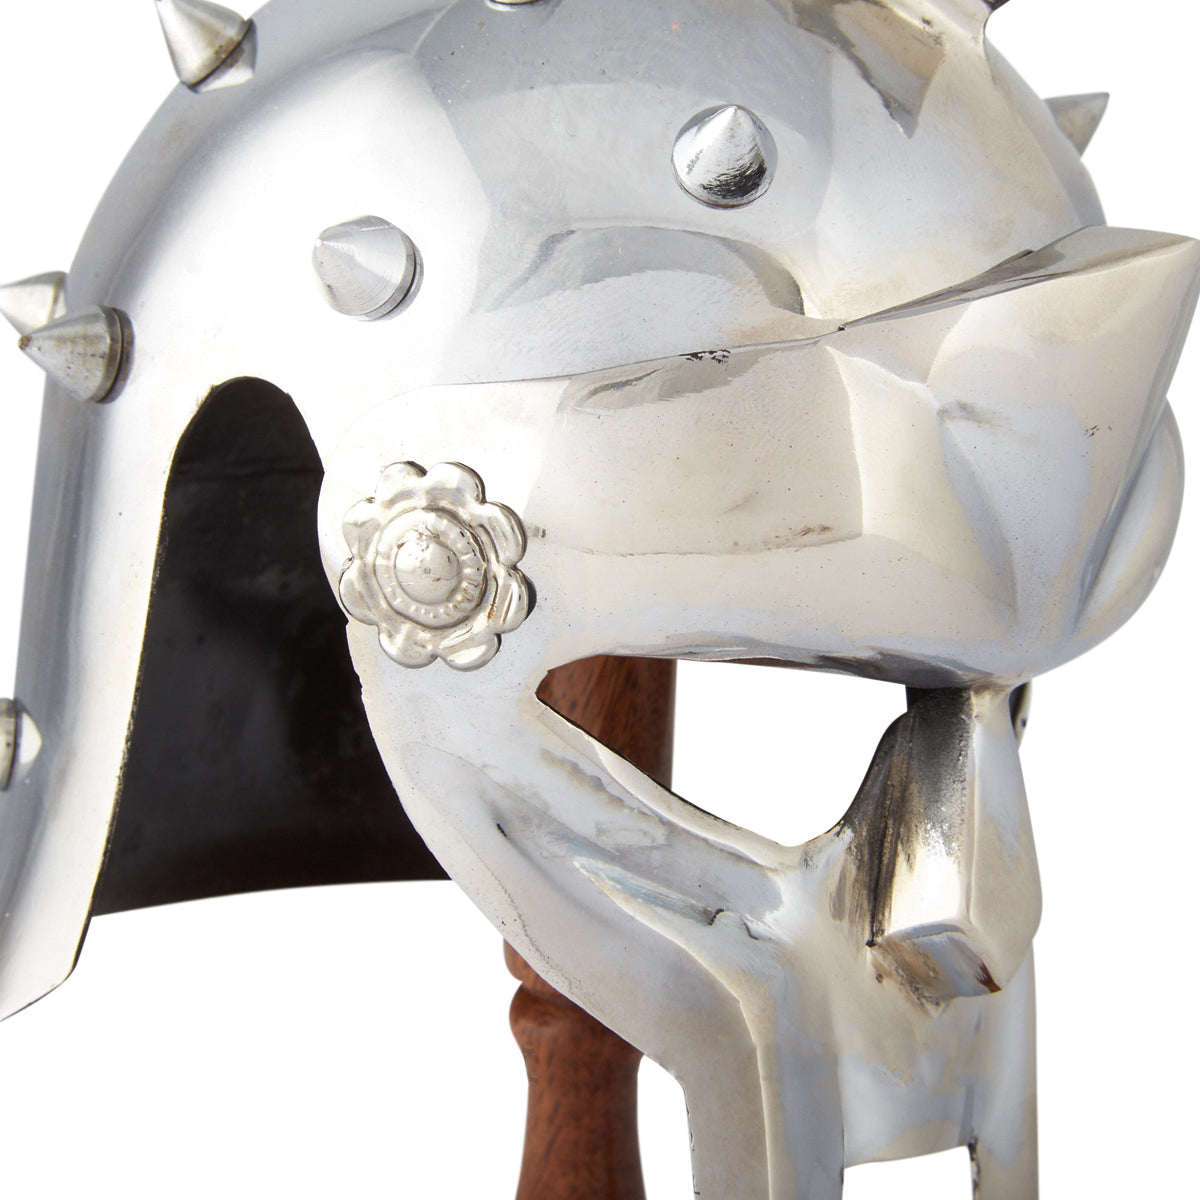 Miniature Maximus Gladiator Helmet - Notbrand